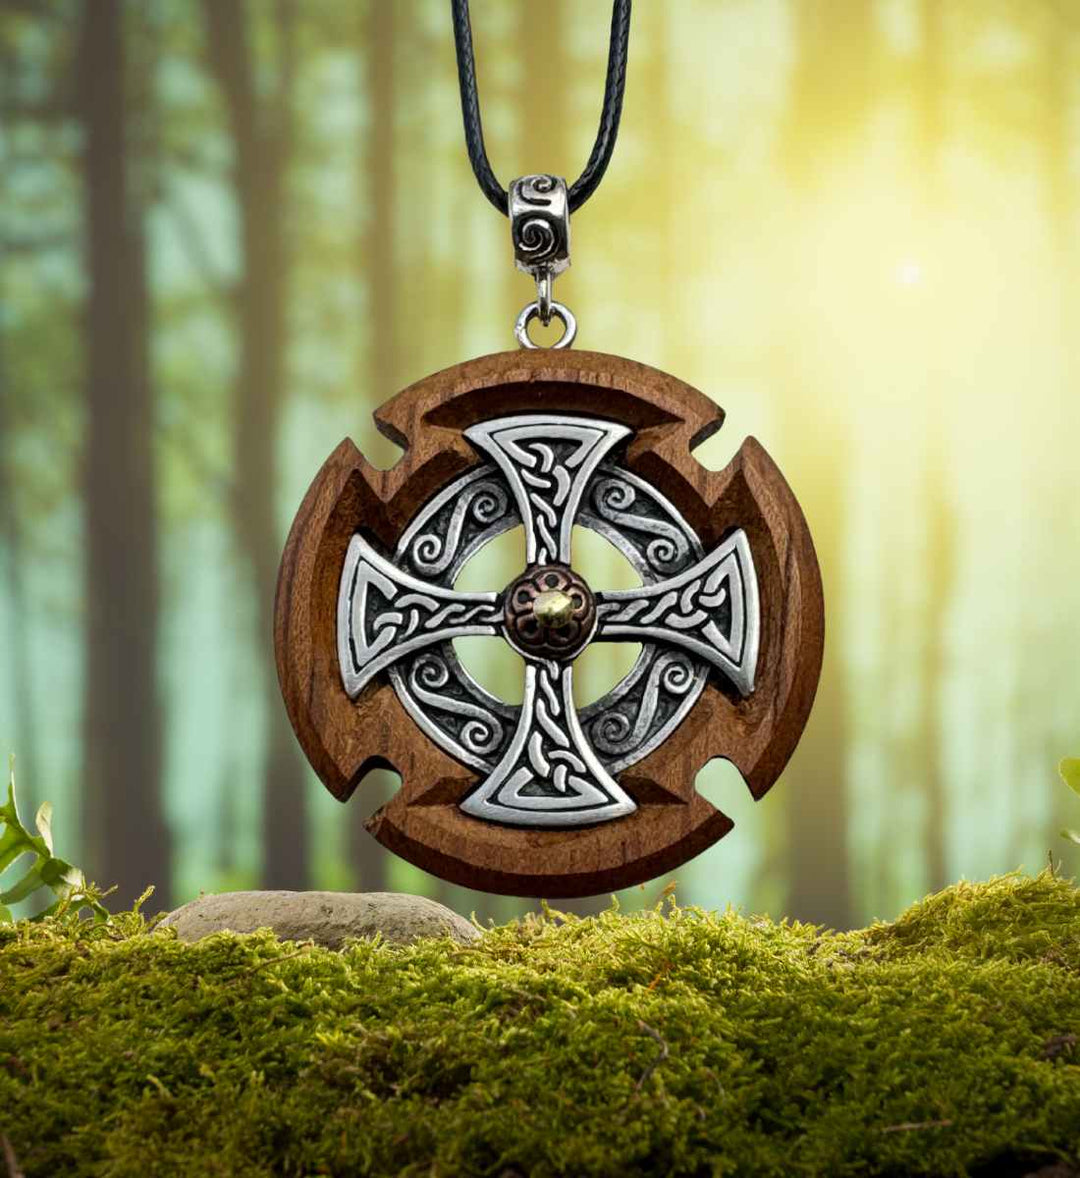 Keltische Kreuzkopf-Halskette aus Walnuss Holz, präsentiert im Wald auf Moos